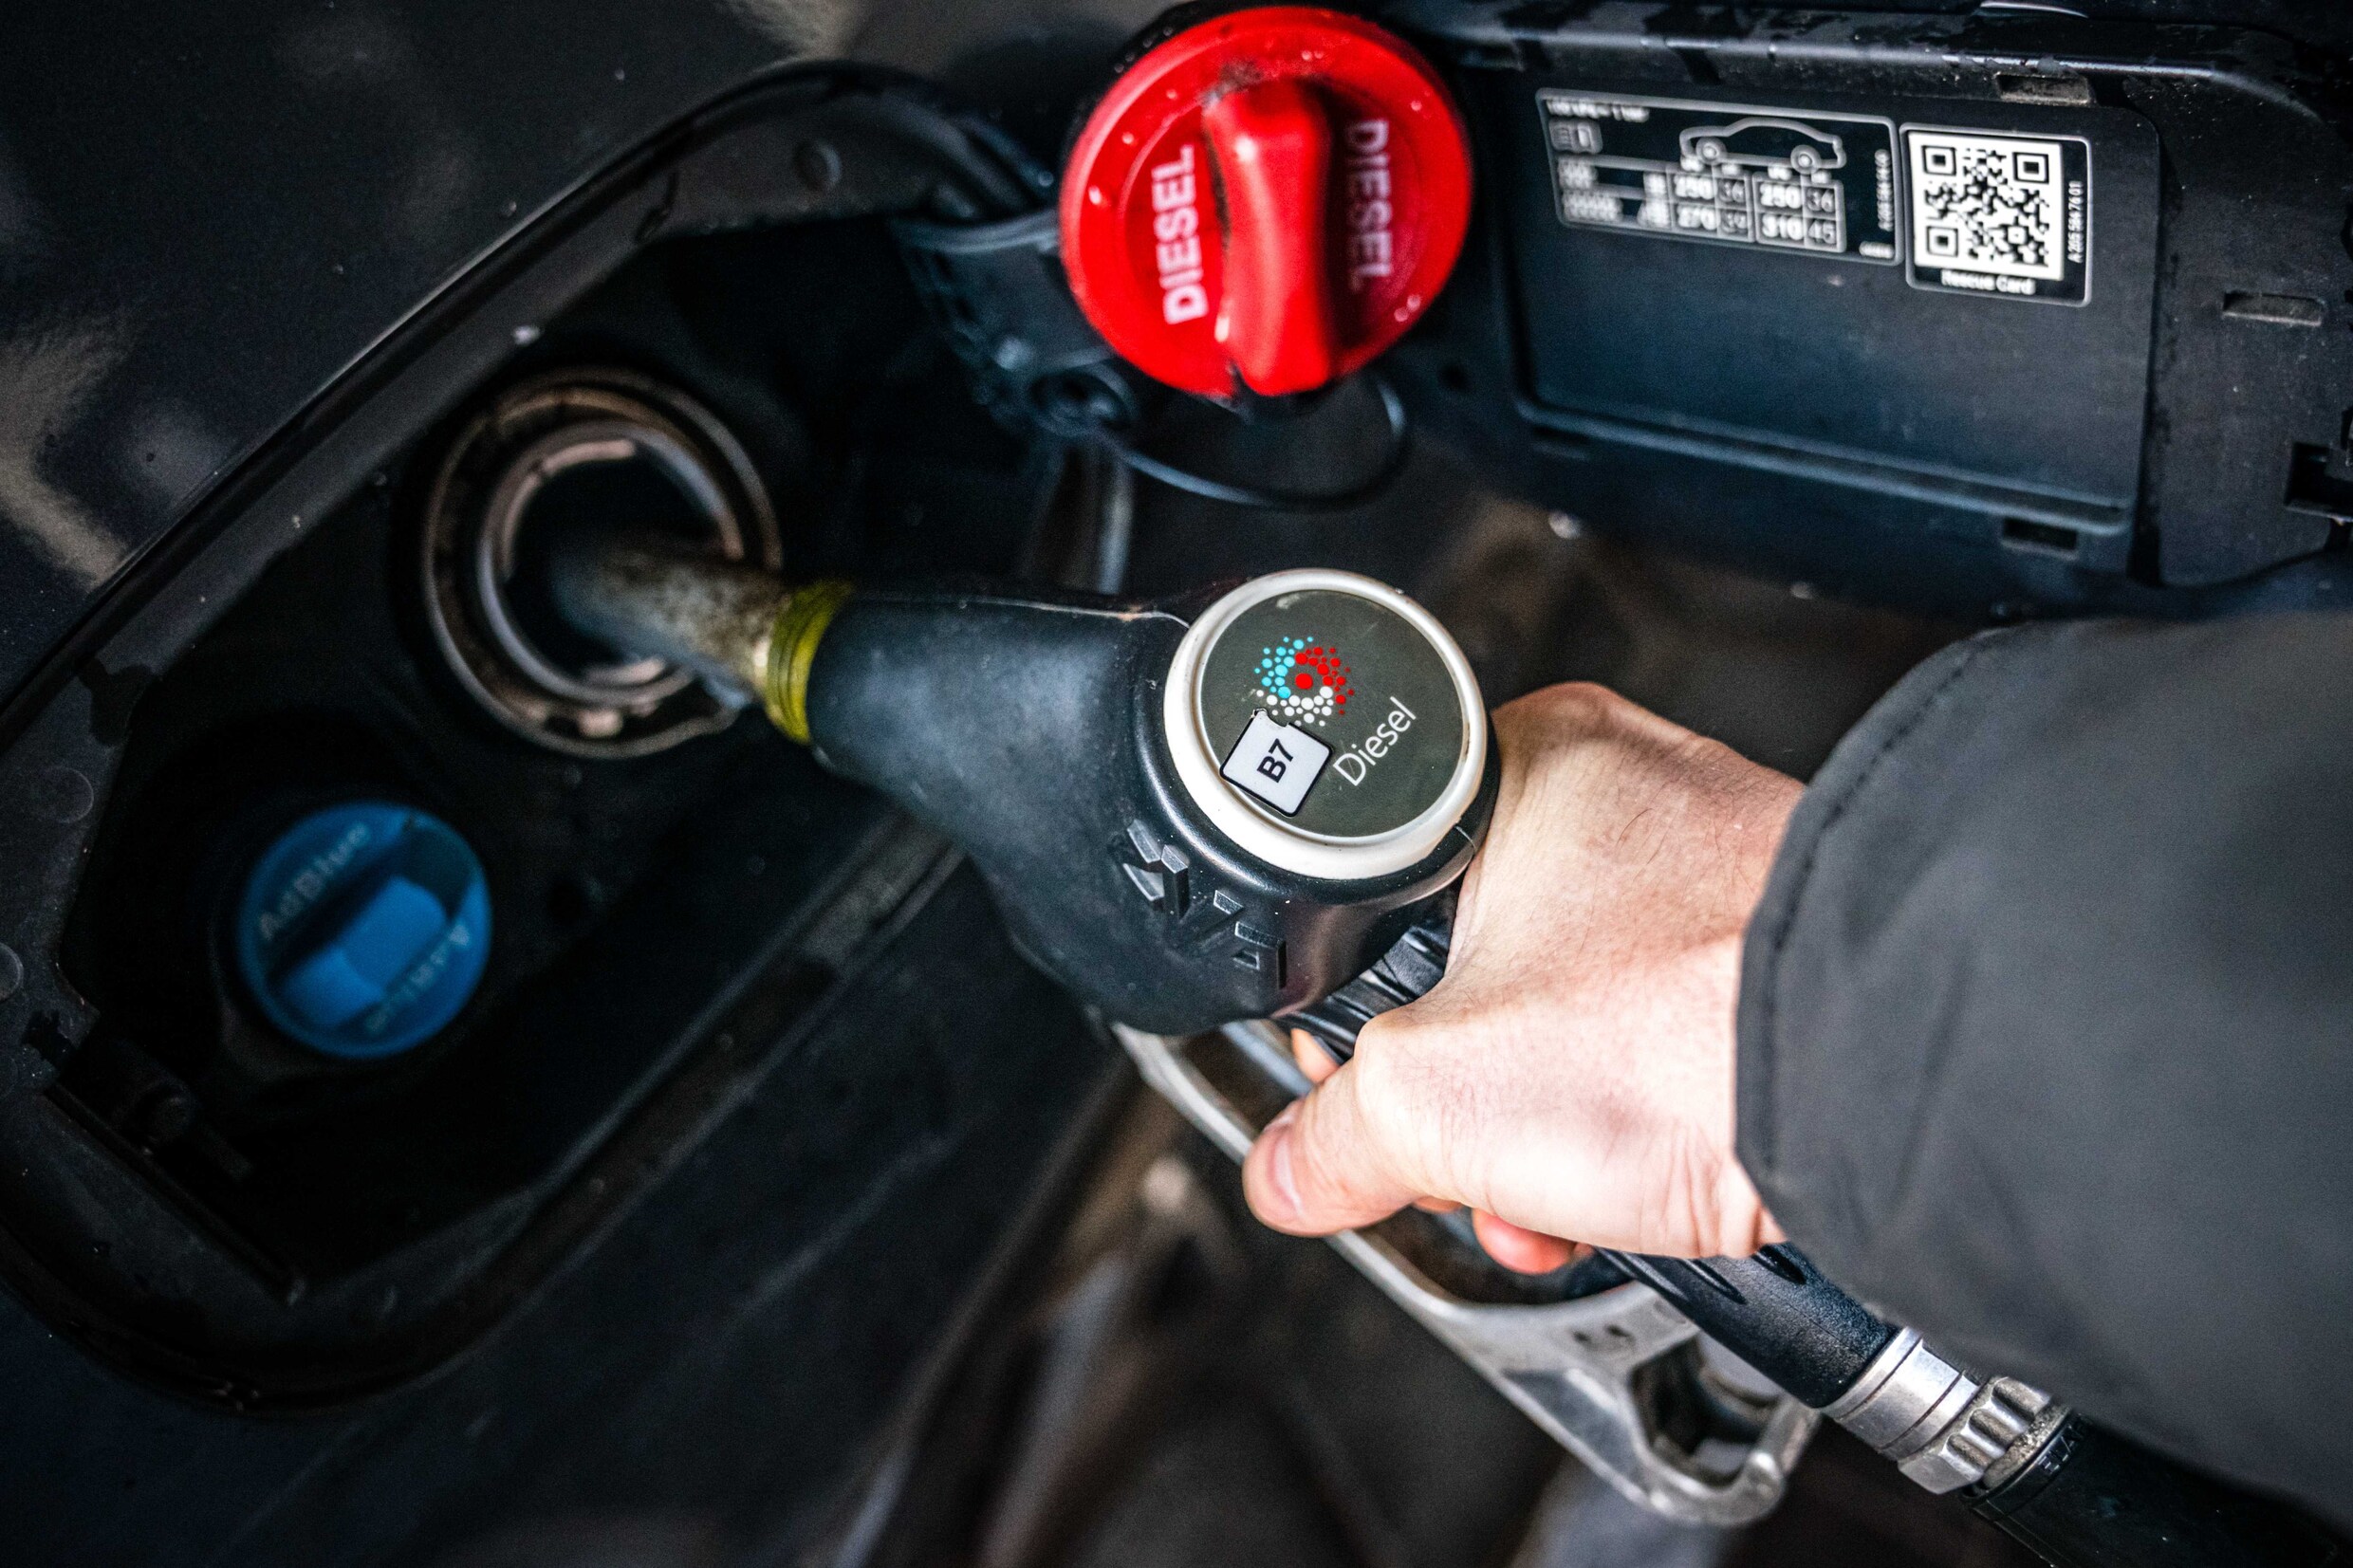 Dieselprijs duikt naar beneden morgen, ondertussen bereikt benzine nieuwe recordprijzen